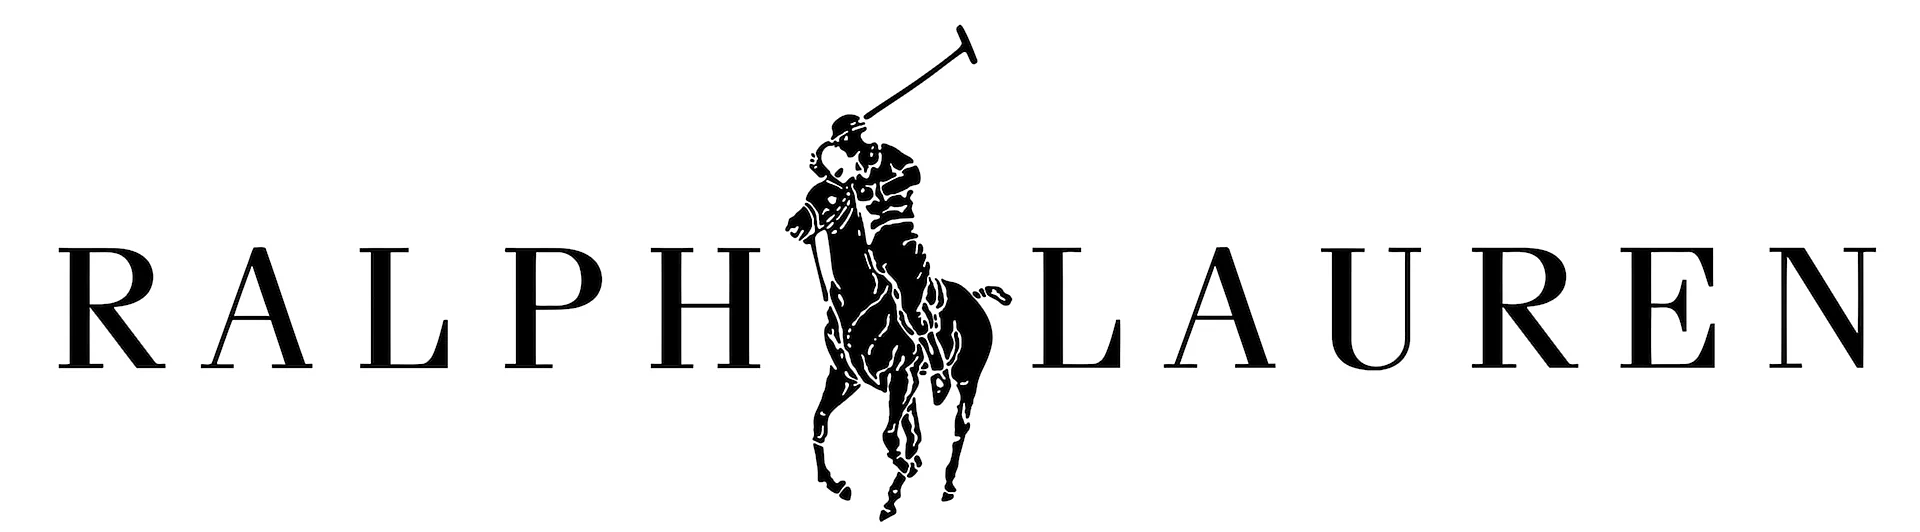 Polo Ralph Lauren Logo Wallpaper